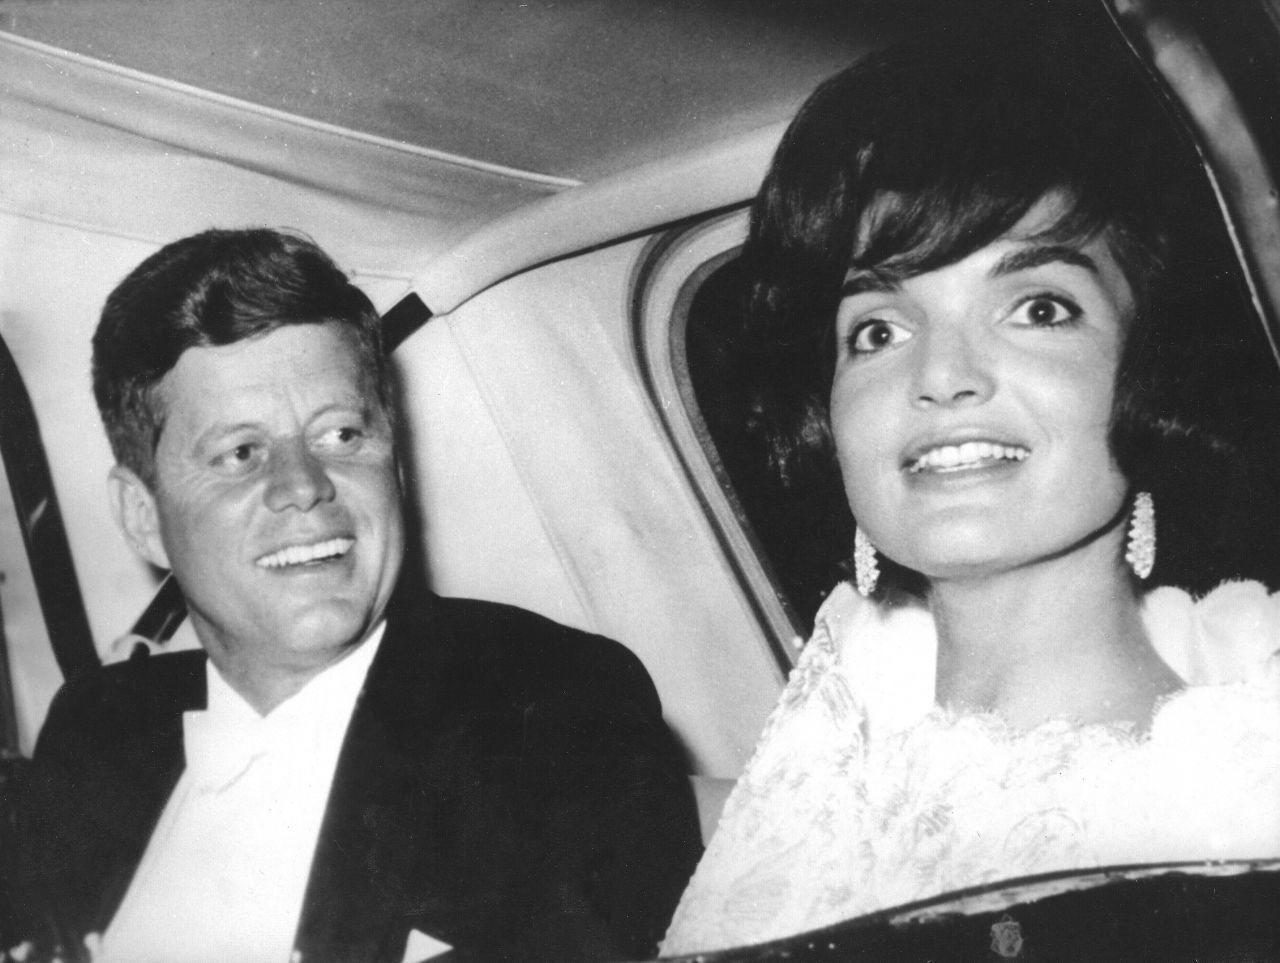 Eine besondere Rolle in der US-Geschichte spielte Jackie Kennedy. An der Seite von John F. Kennedy begeisterte sie die USA der 1960er Jahre vor allem mit ihrem glamourösen Stil und Auftritt. Die ganze Welt war geschockt, als John F. Kennedy 1963 neben seiner Frau Jackie erschossen wurde. Auch nach dem Tod ihres Mannes faszinierte Kennedy viele Menschen als Stil-Ikone.